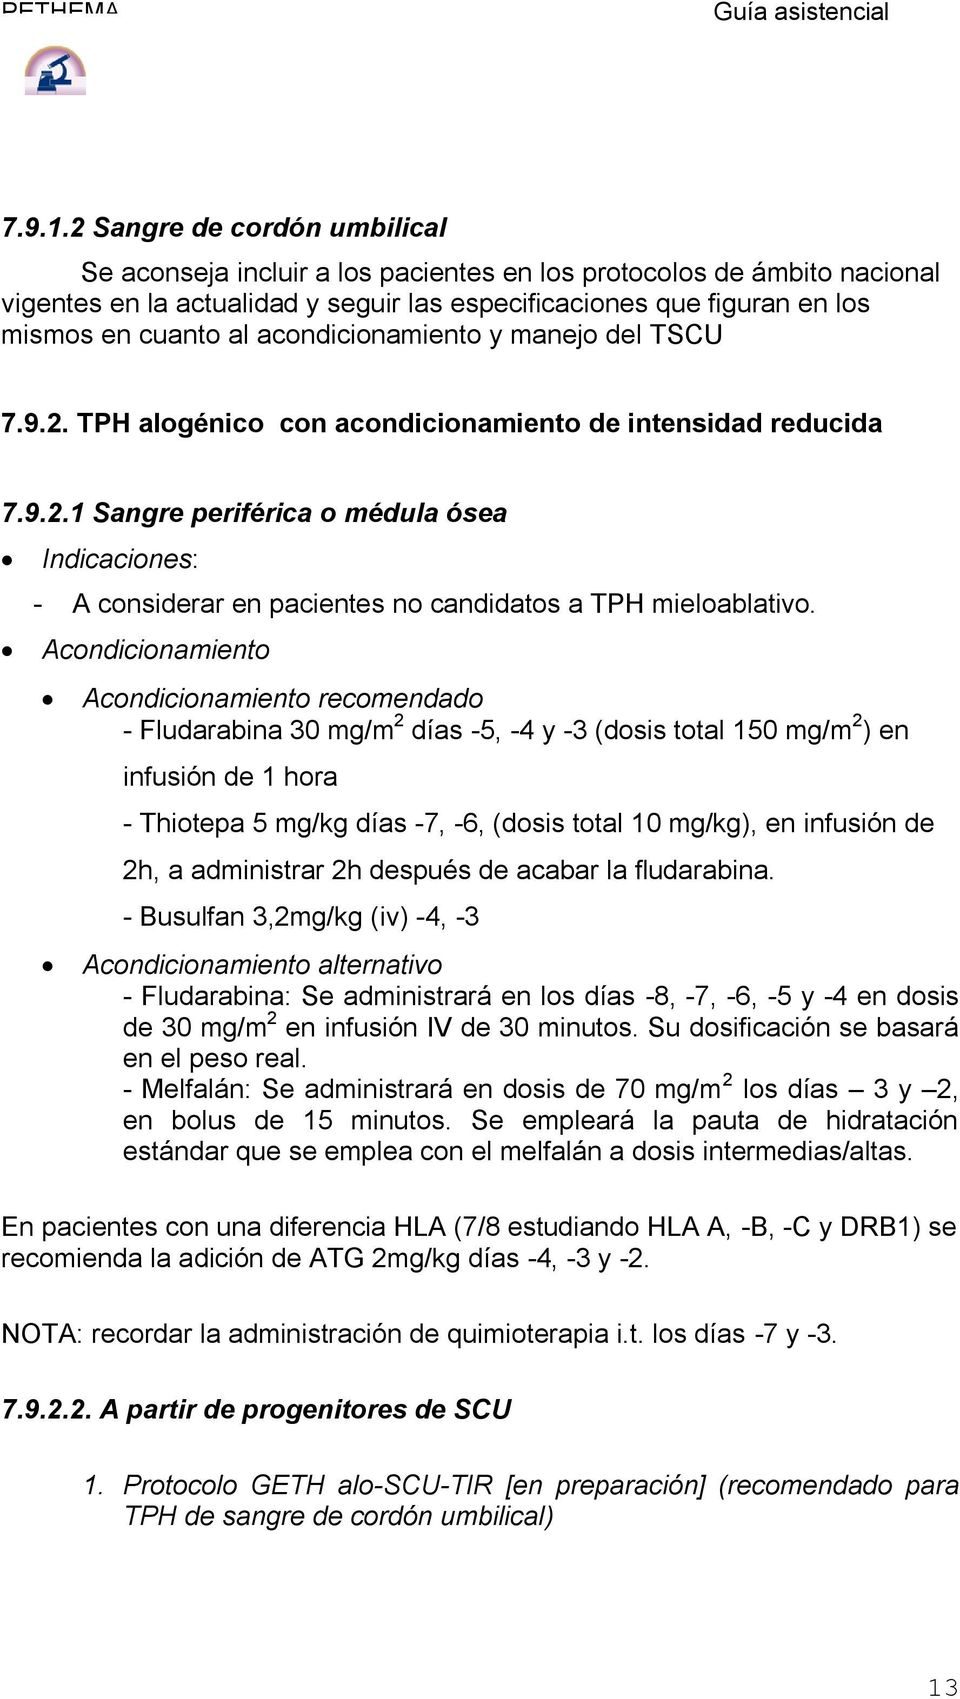 acondicionamiento y manejo del TSCU 7.9.2. TPH alogénico con acondicionamiento de intensidad reducida 7.9.2.1 Sangre periférica o médula ósea Indicaciones: - A considerar en pacientes no candidatos a TPH mieloablativo.